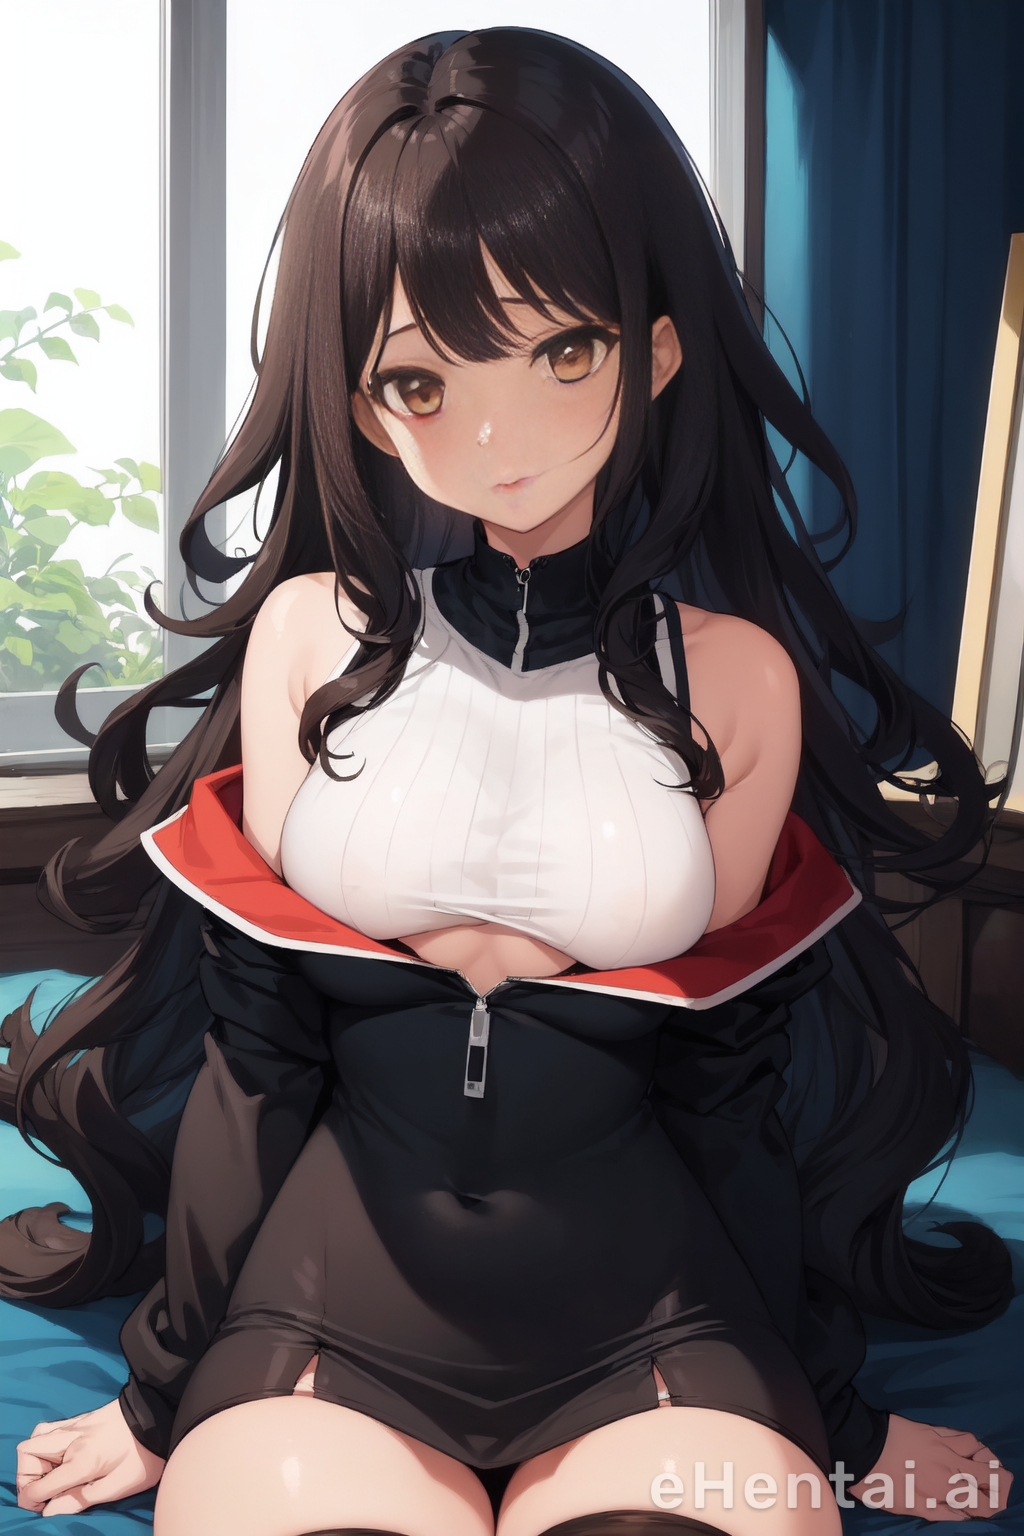 Medium Breast Hentai - Meet UI Kuroki - your hentai AI generated girl is here | eHentai.ai